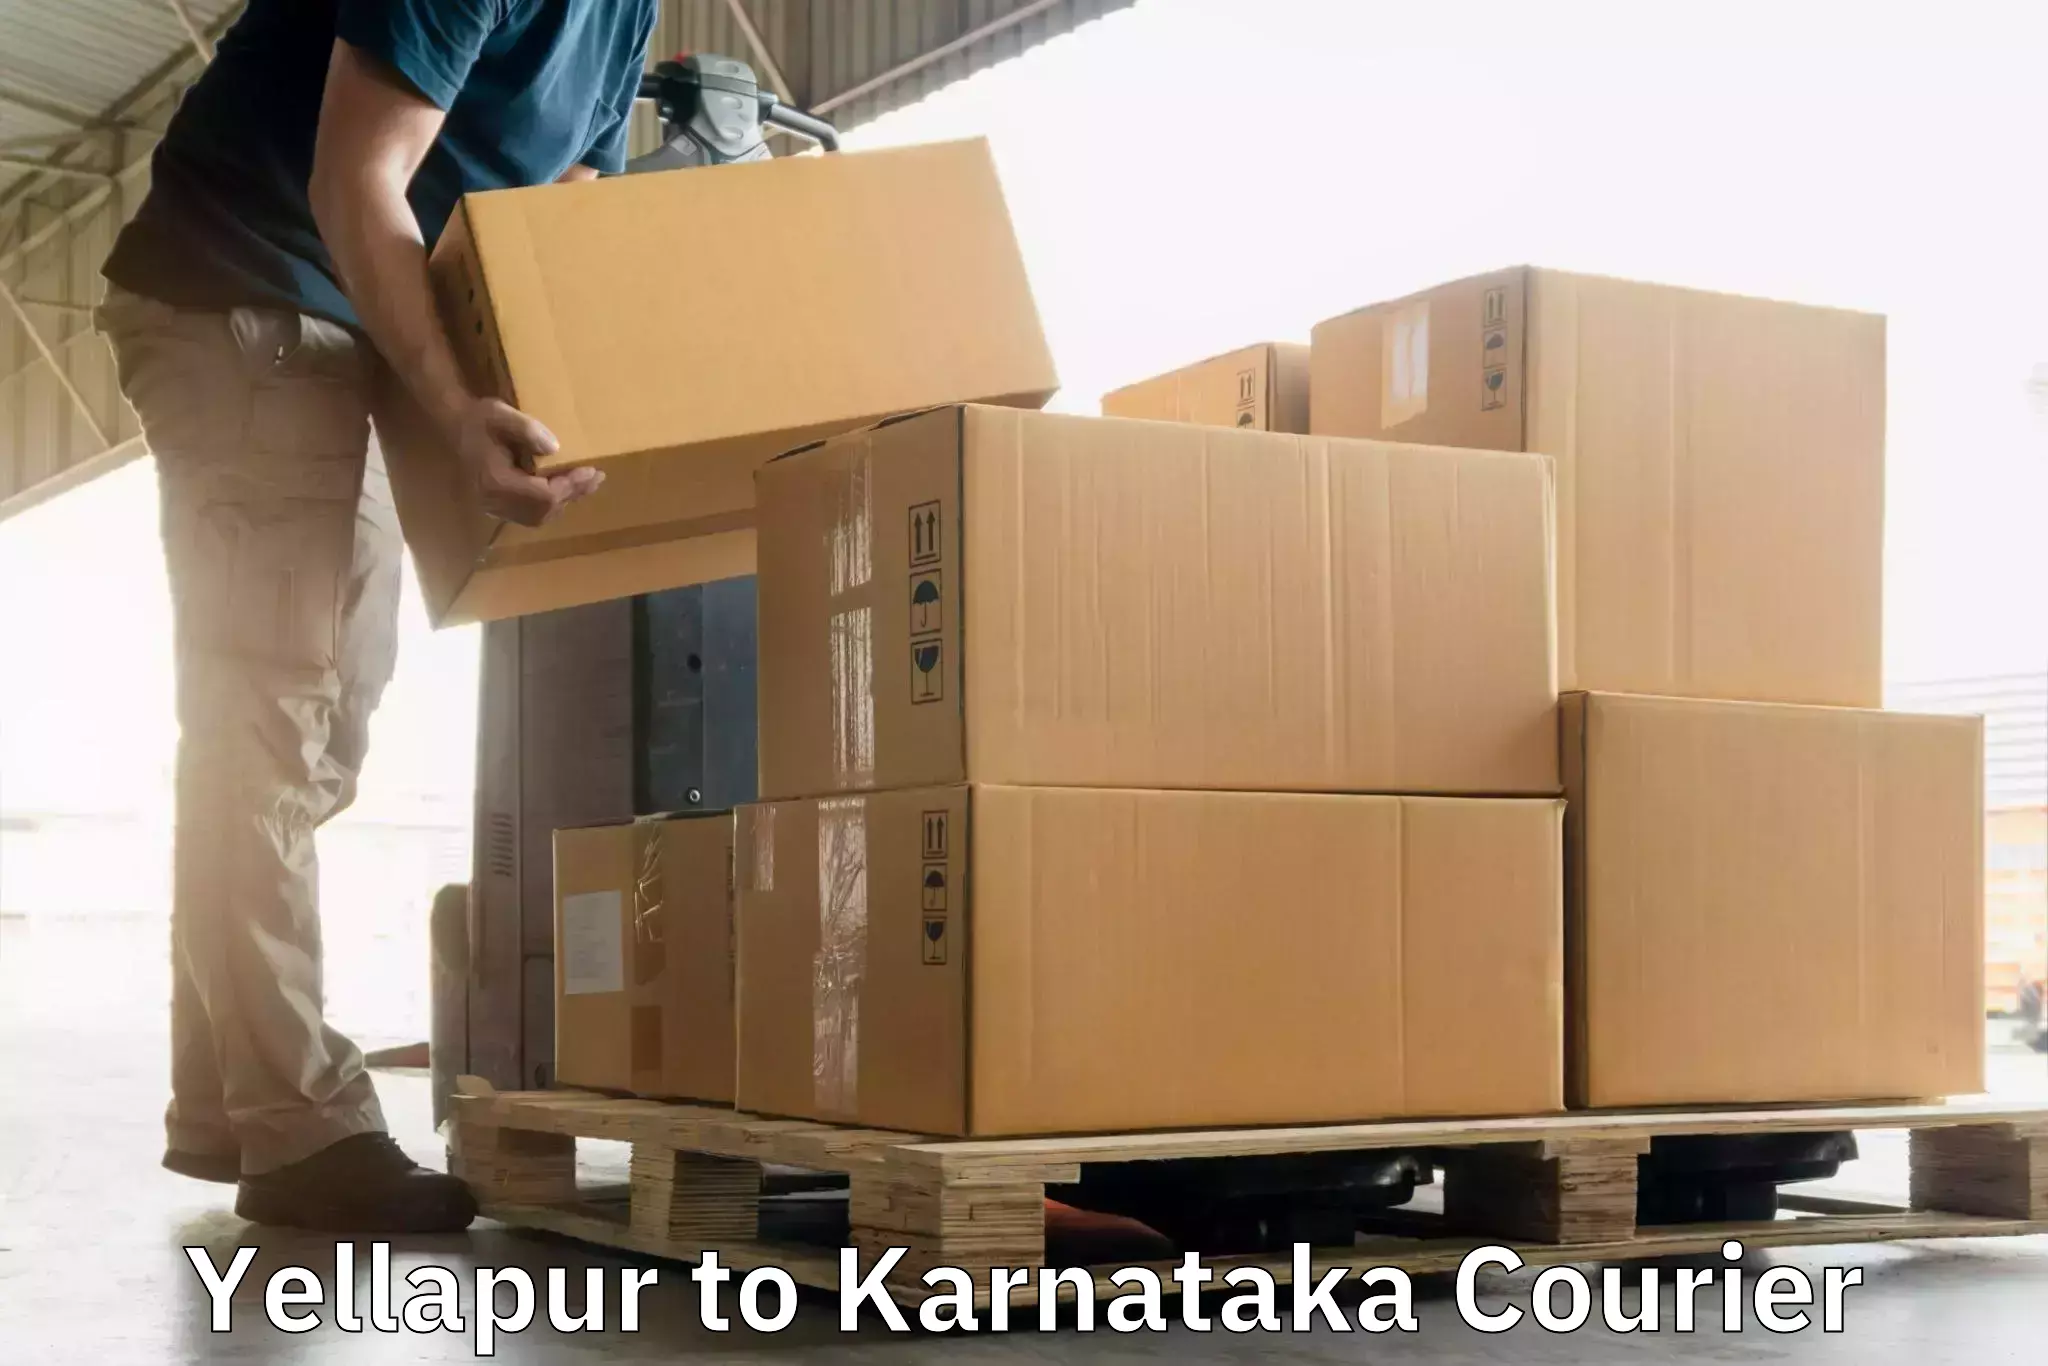 Ground shipping Yellapur to Karnataka